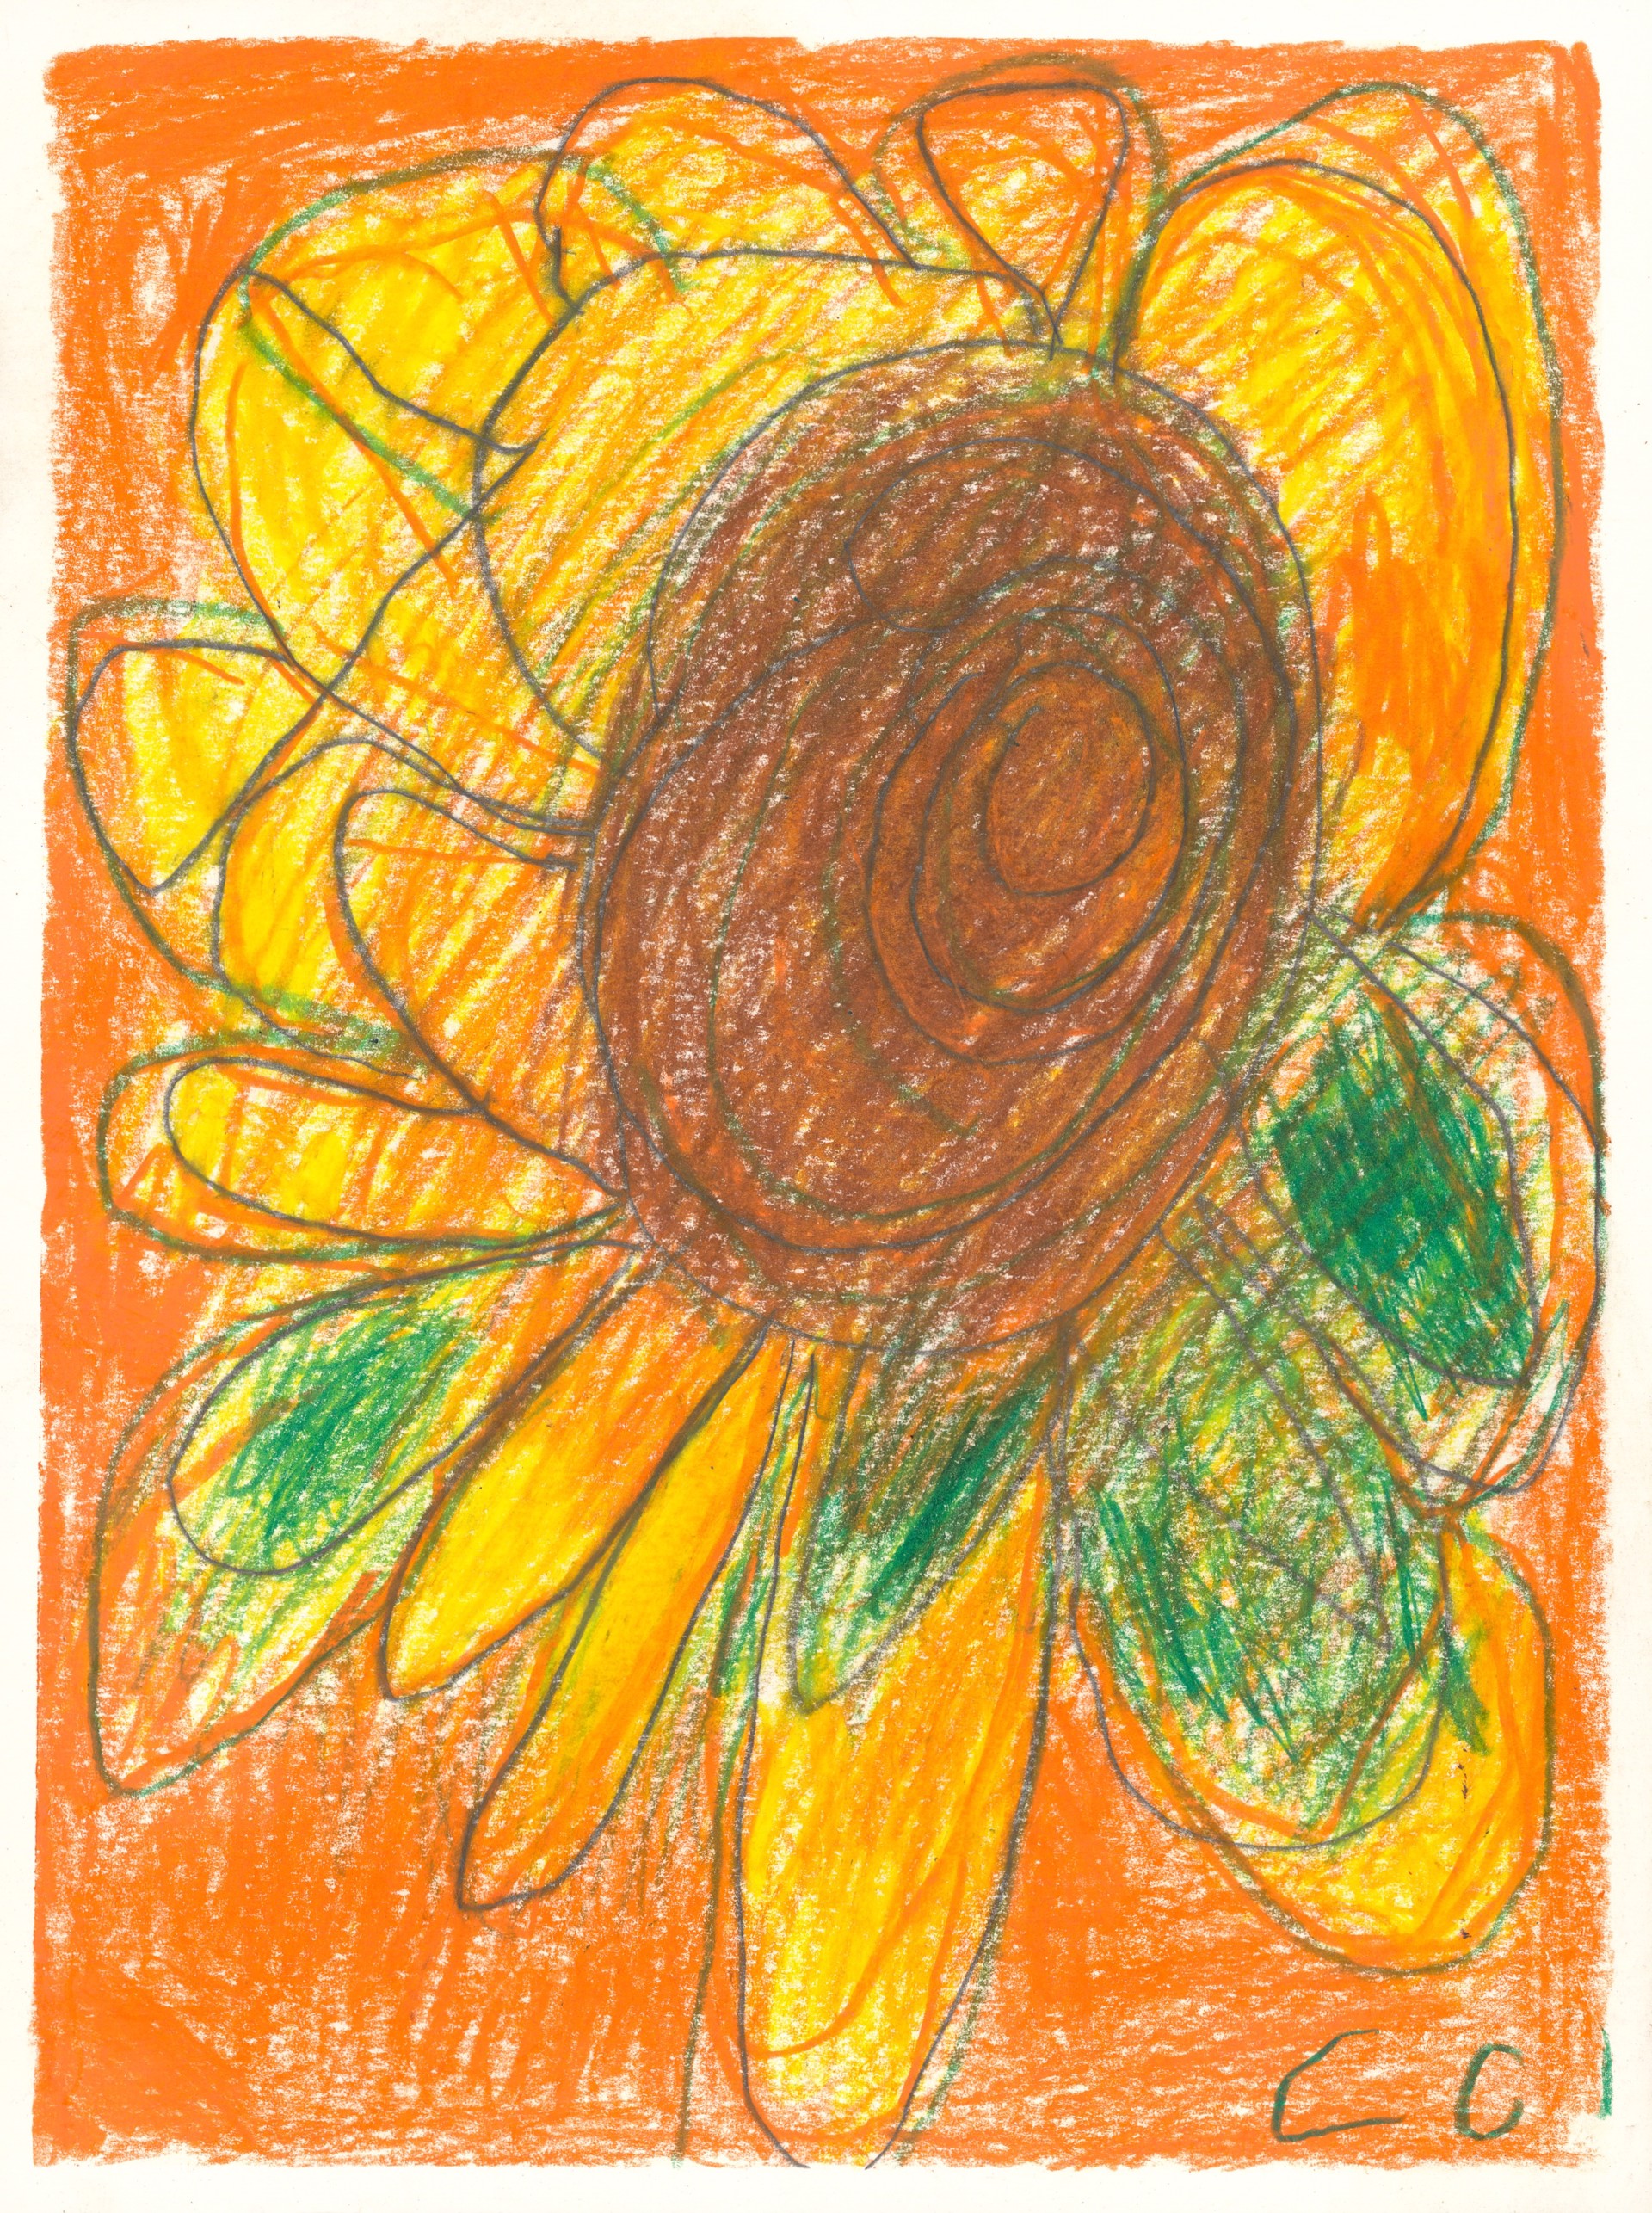 Sunflower by Calvin "Sonny" Clarke